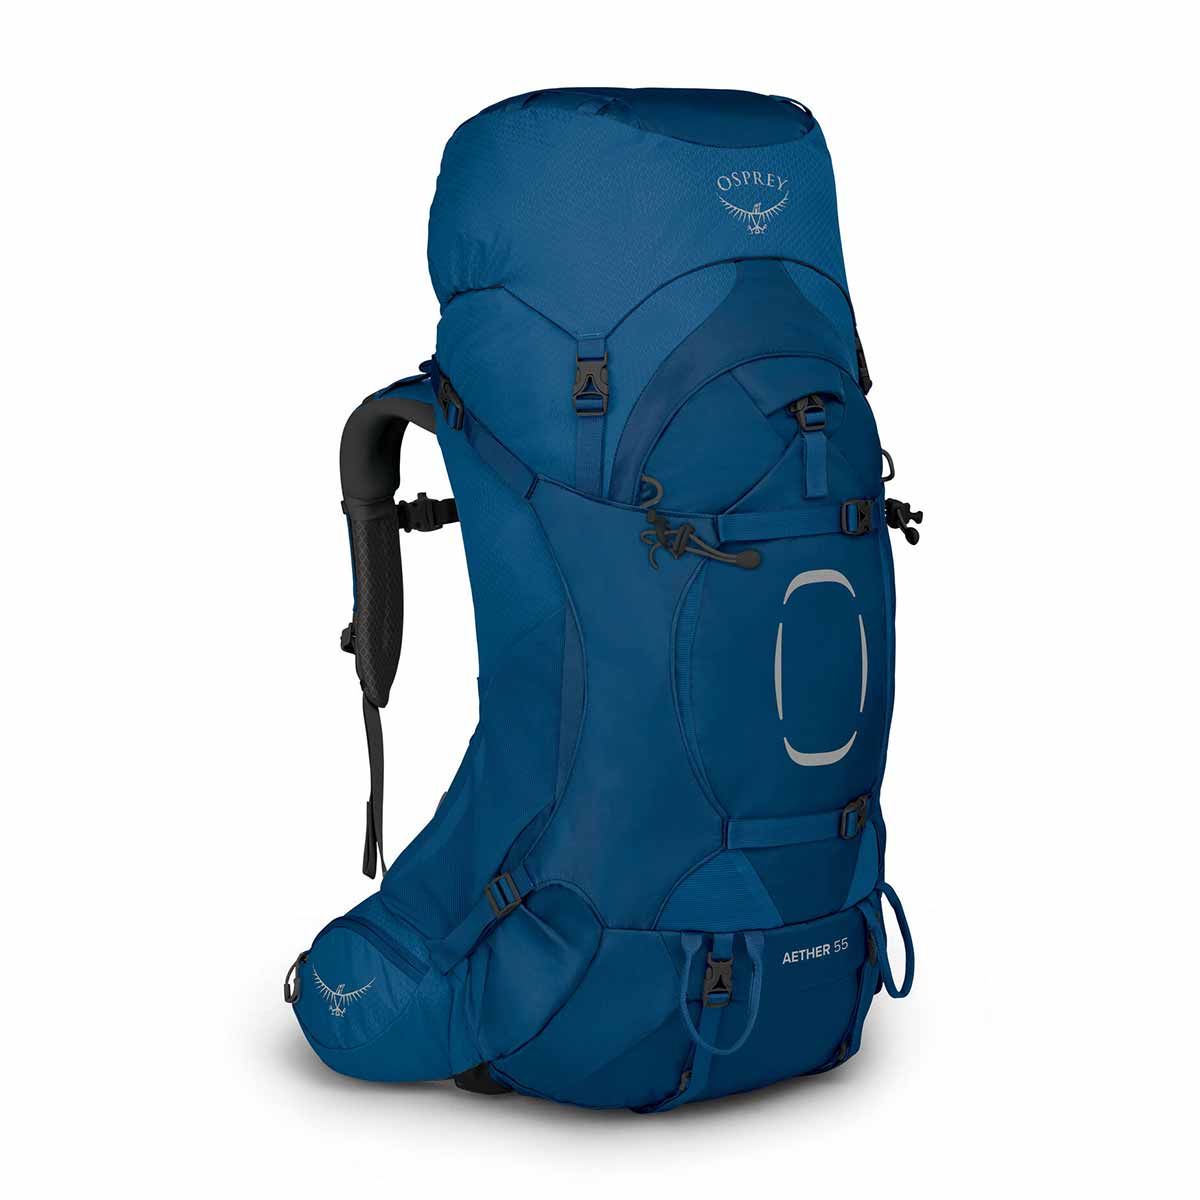 Osprey Aether 55 backpacking backpack - Men